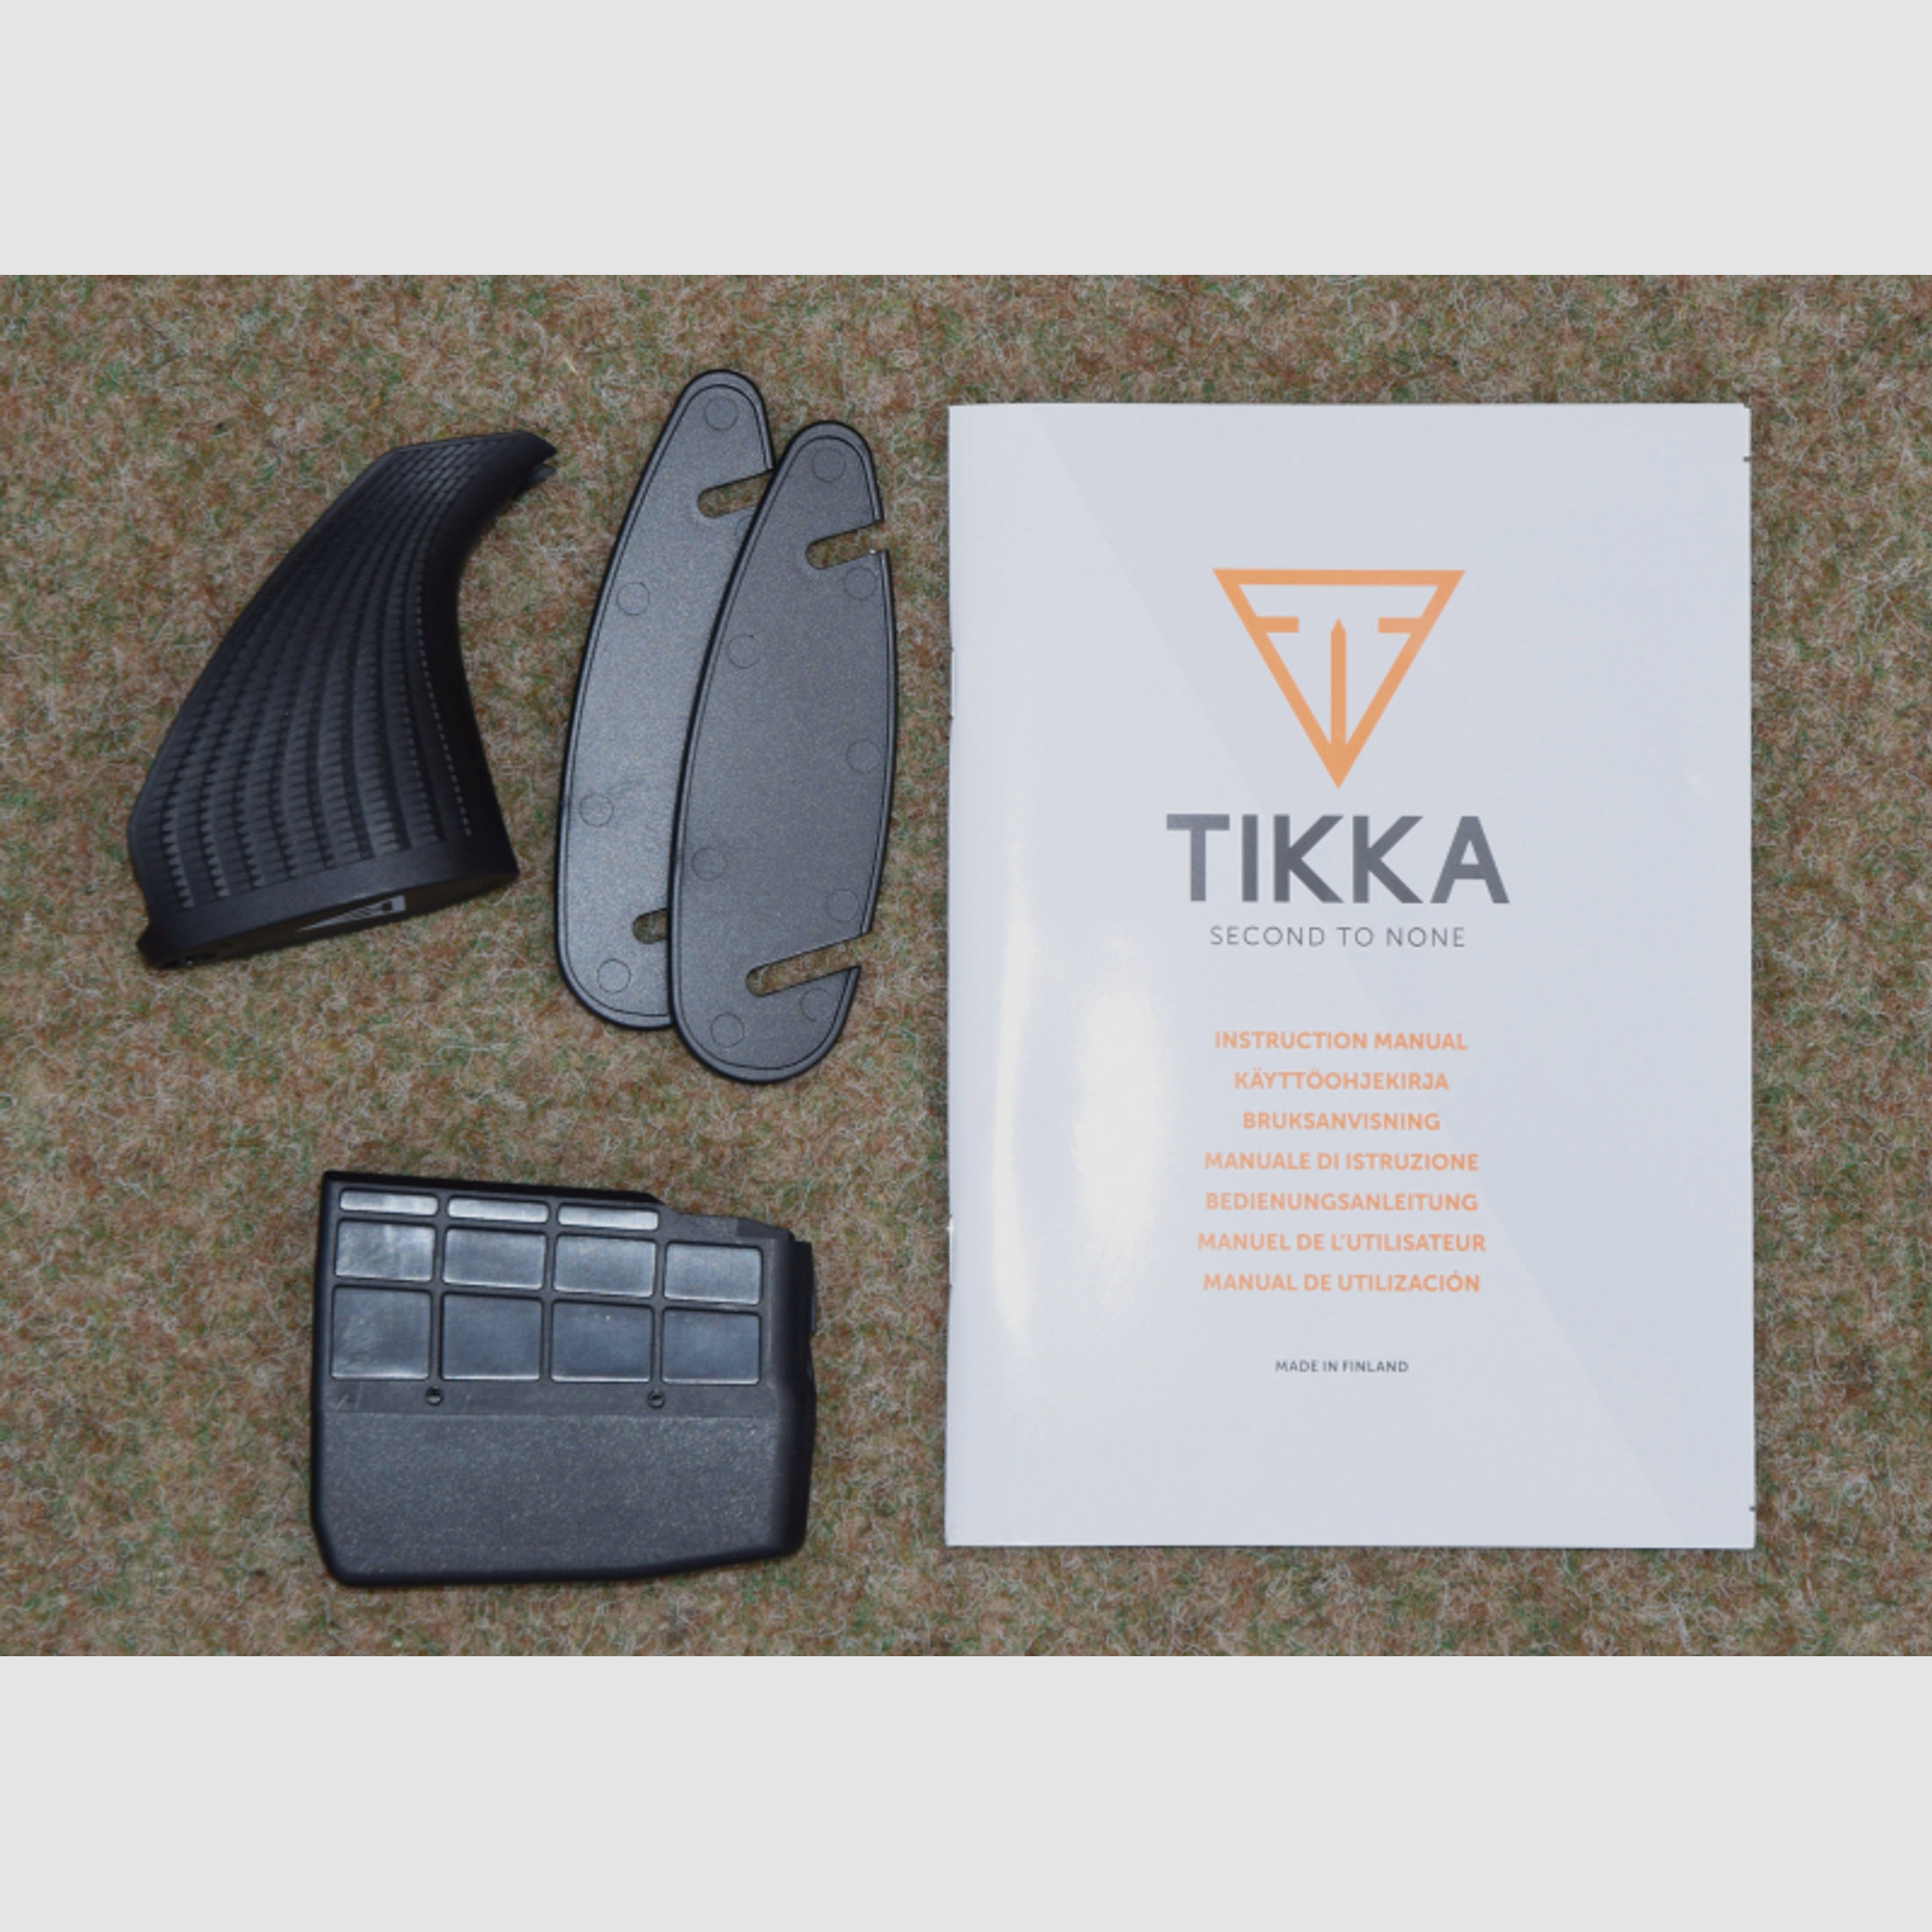 Tikka T3X Lite Stainless mit M15/1 Gewinde in .308 Win., Linkssystem